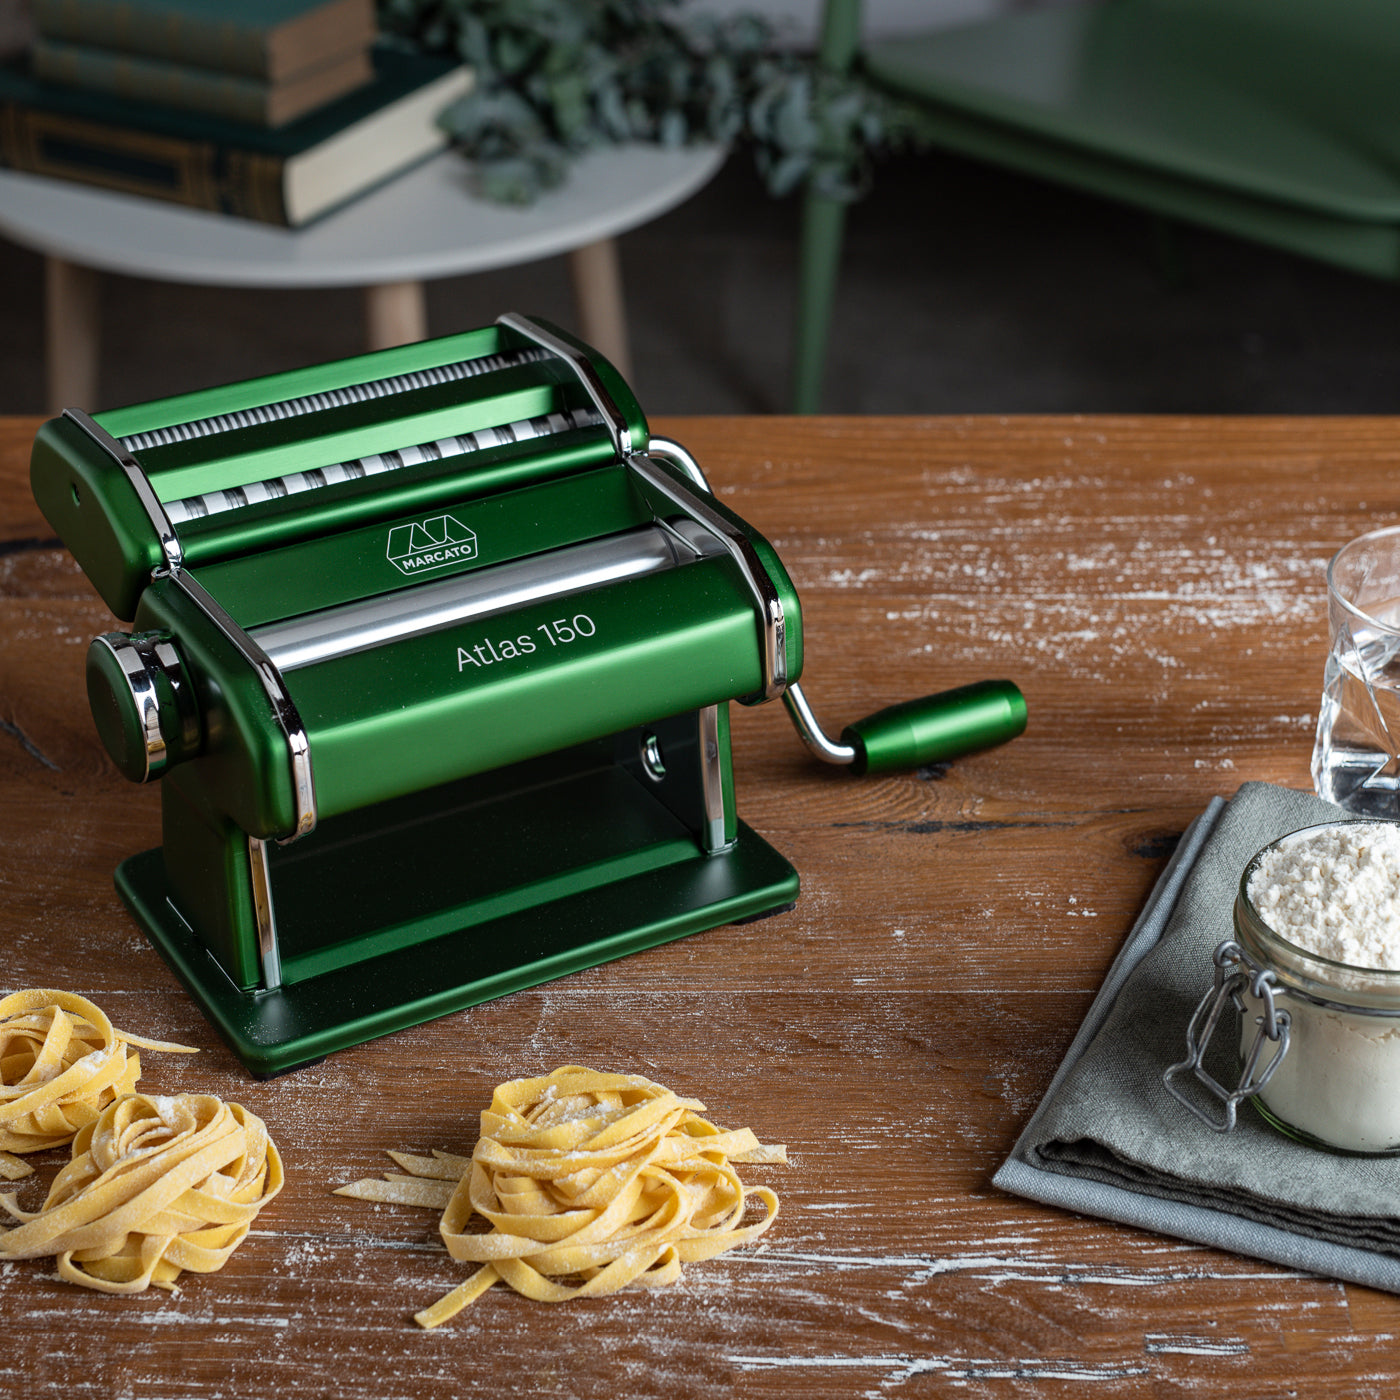 Marcato Atlas 150 Classic Pasta Machine